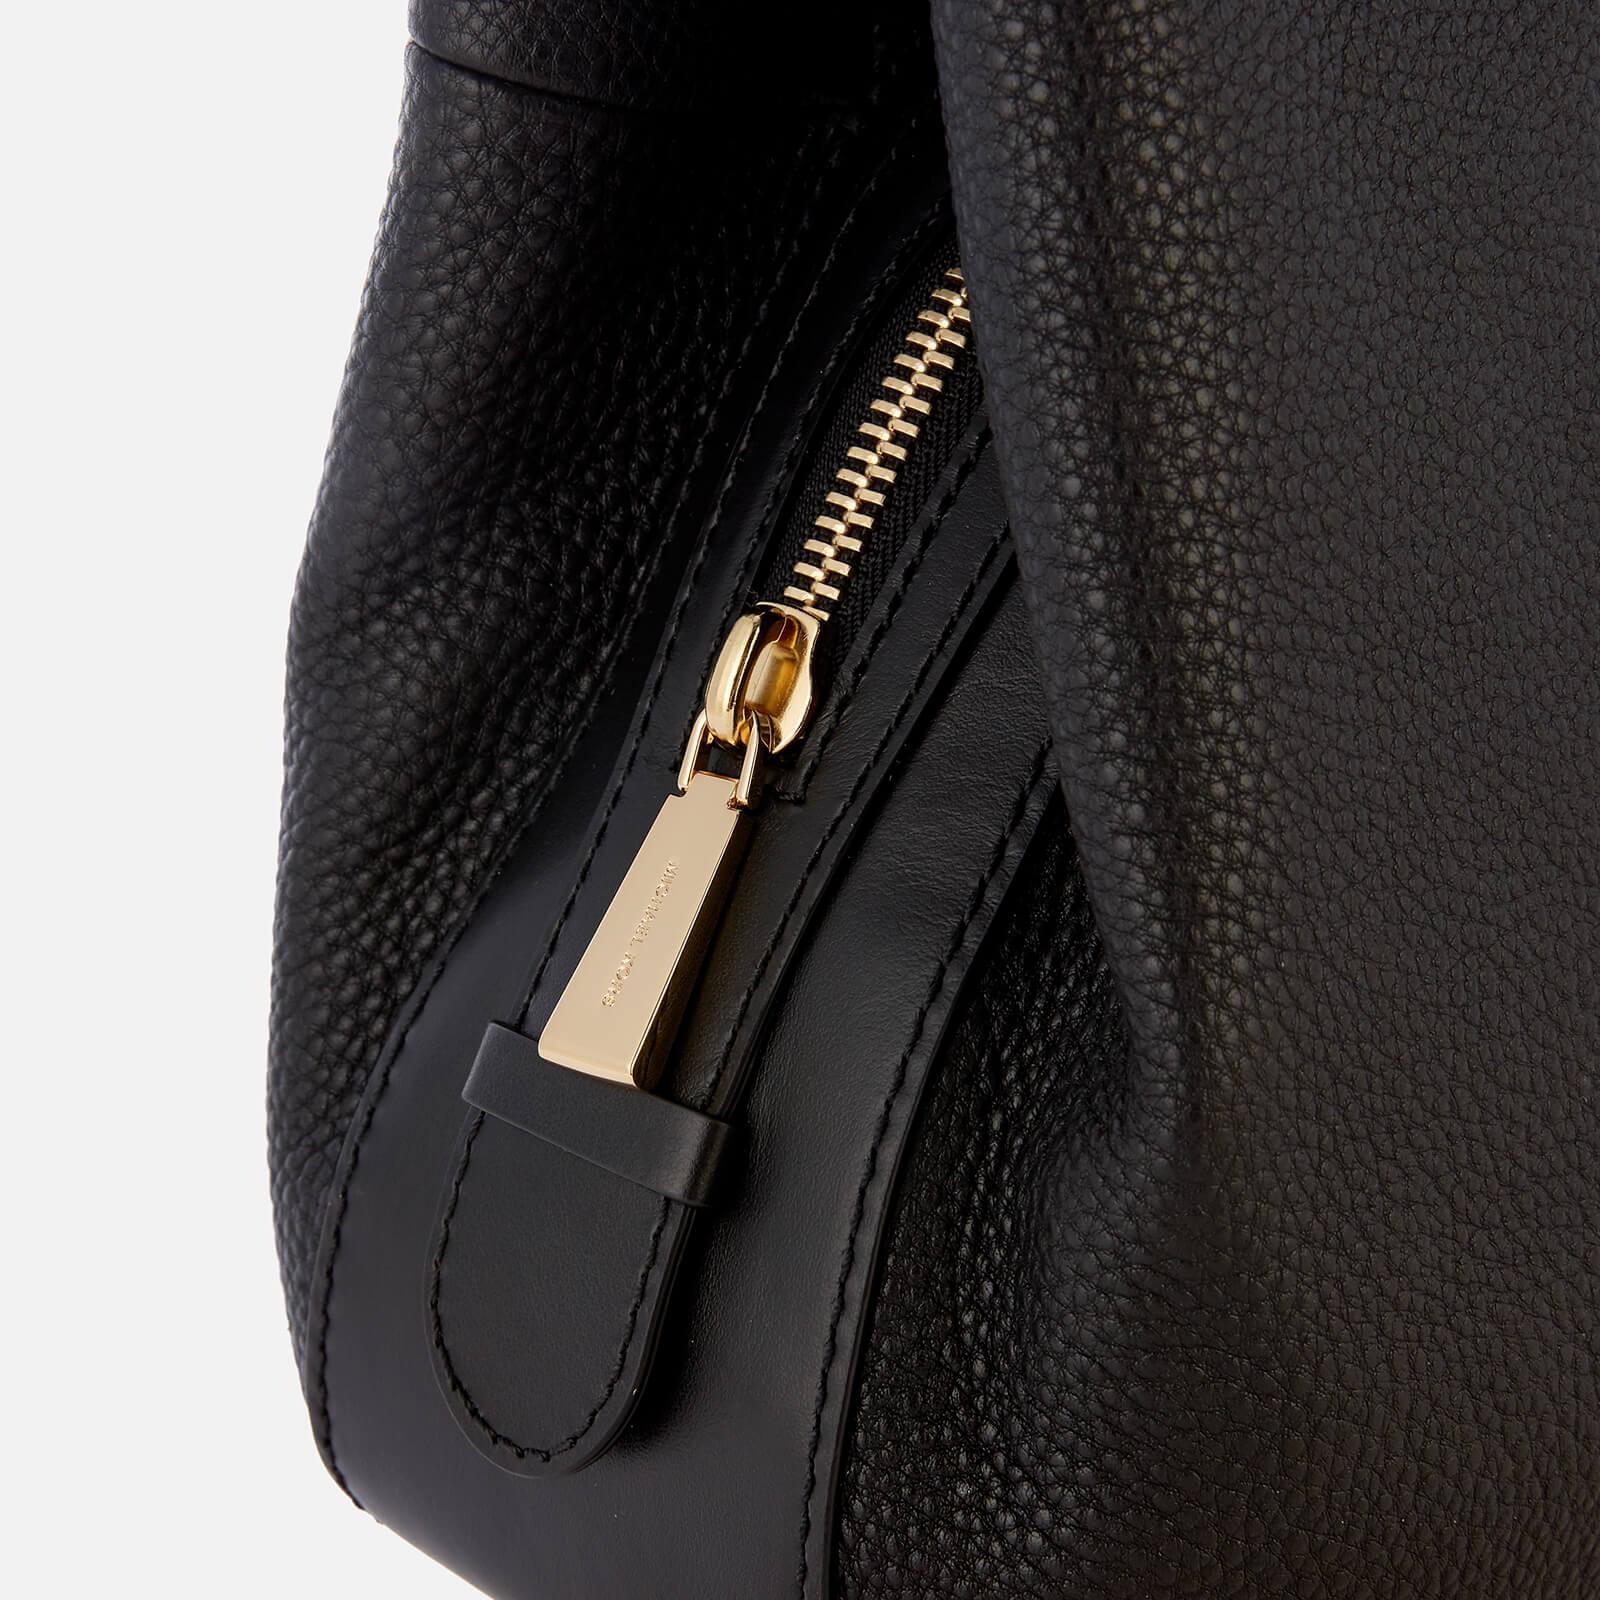 Michael Kors Lillie Large Leather Shoulder Bag (Vanilla)